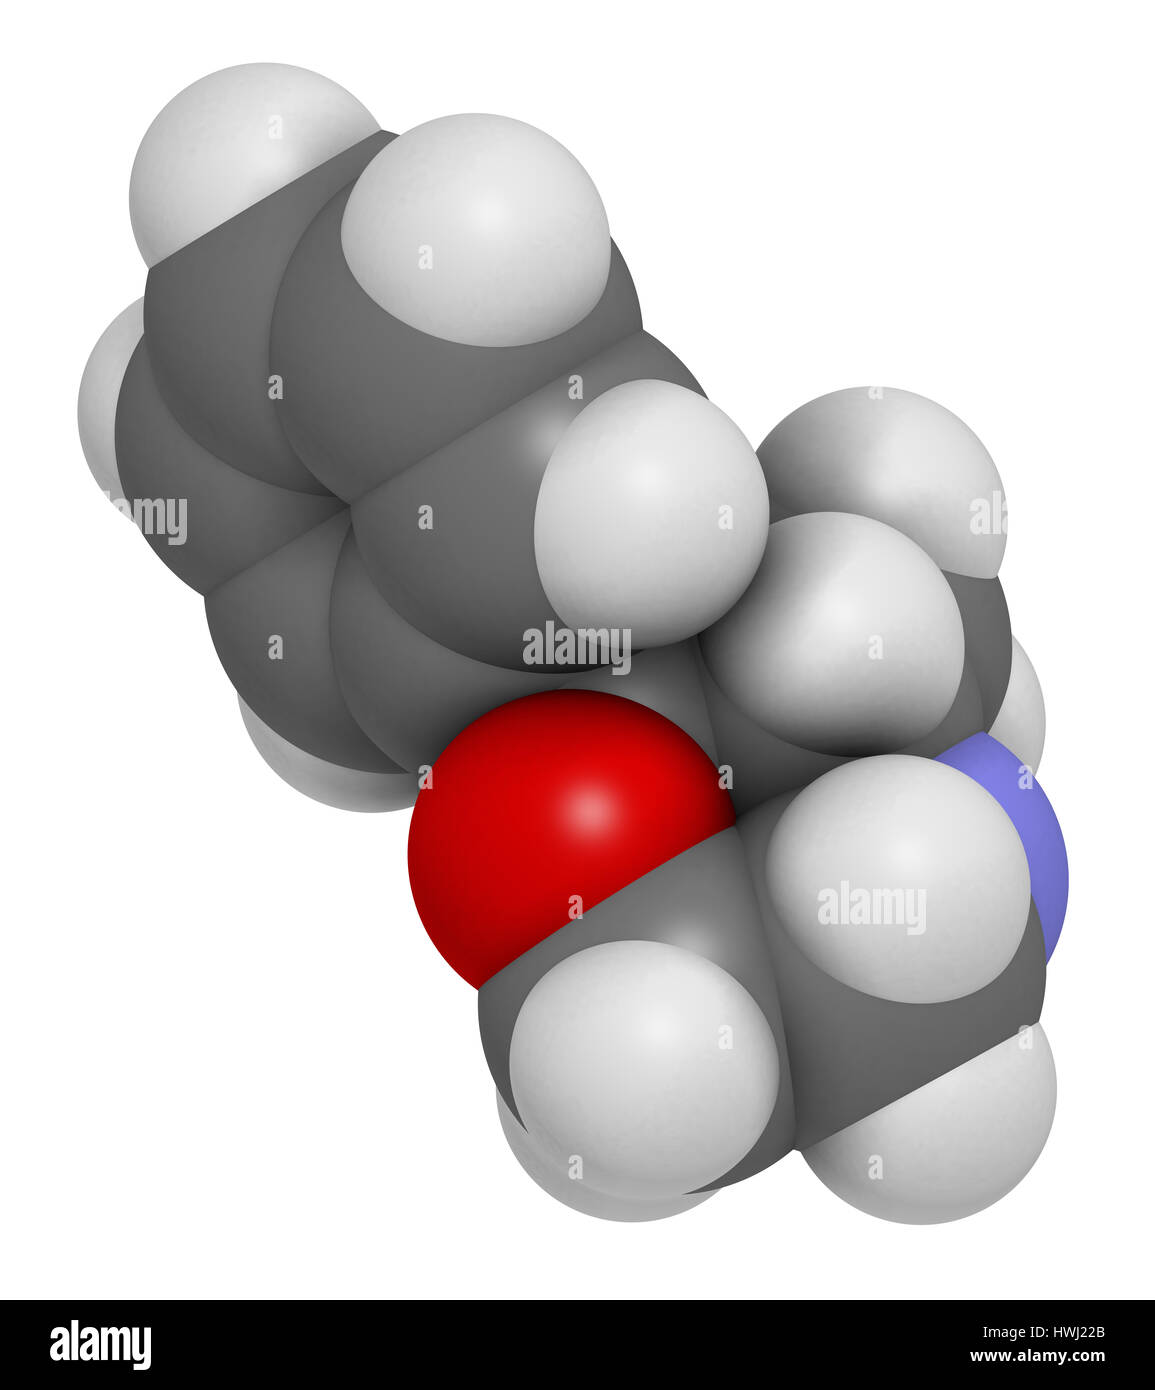 Phenmetrazine Stimulans Wirkstoffmolekül (Amphetamin-Klasse). Als Stimulans und Appetit Suppressant verwendet.  Atome sind als Kugeln mit Singletouch vertreten. Stockfoto